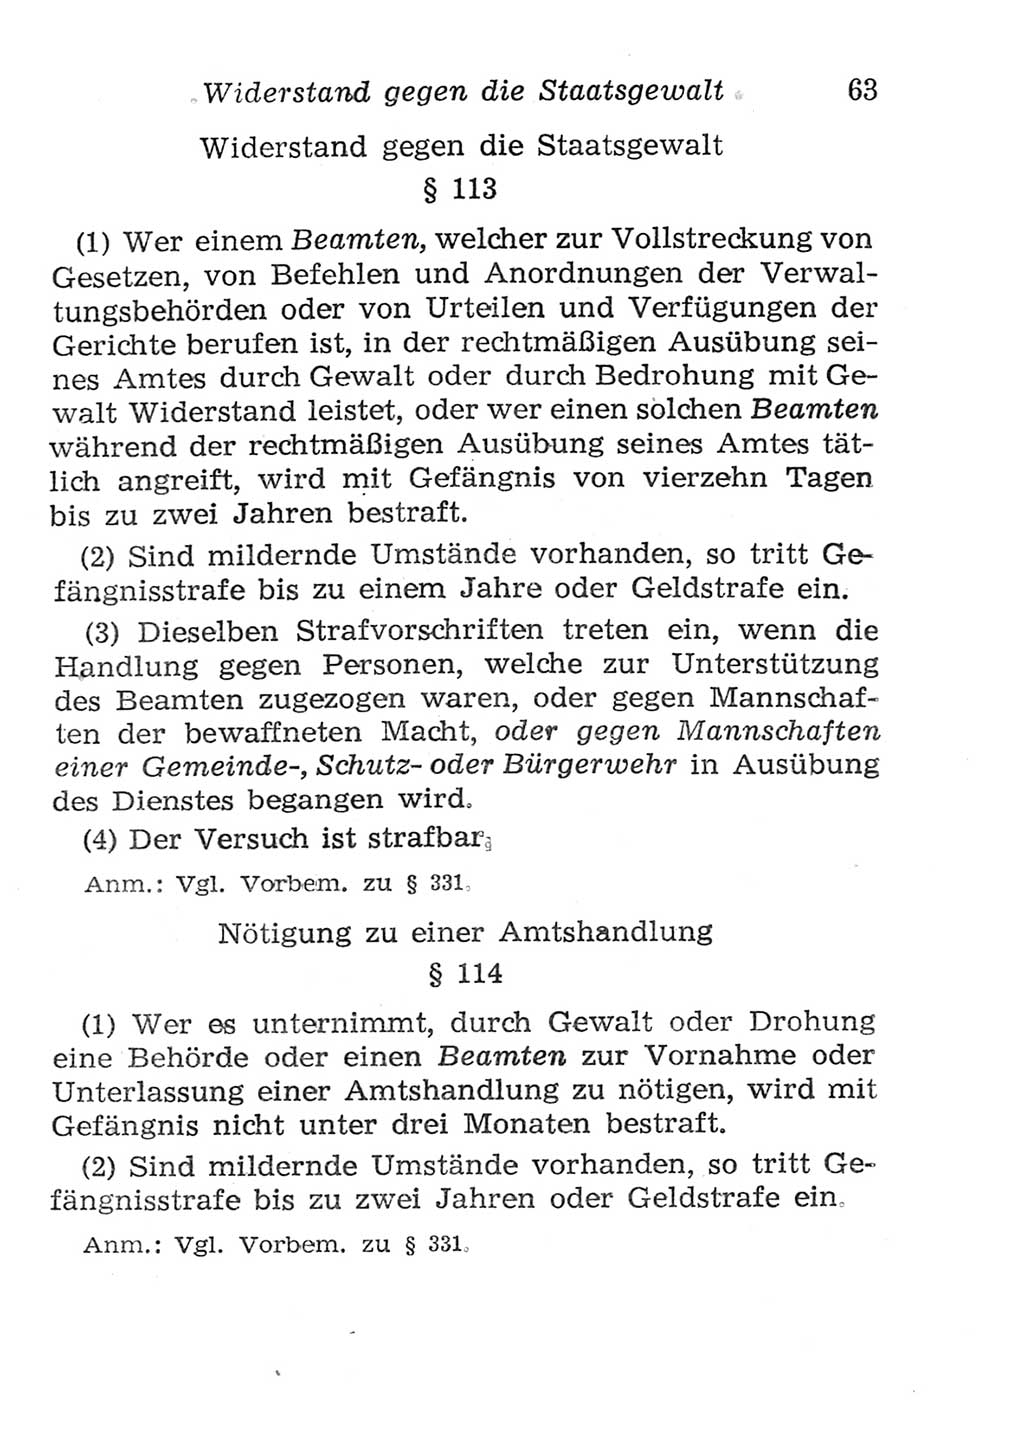 Strafgesetzbuch (StGB) und andere Strafgesetze [Deutsche Demokratische Republik (DDR)] 1957, Seite 63 (StGB Strafges. DDR 1957, S. 63)